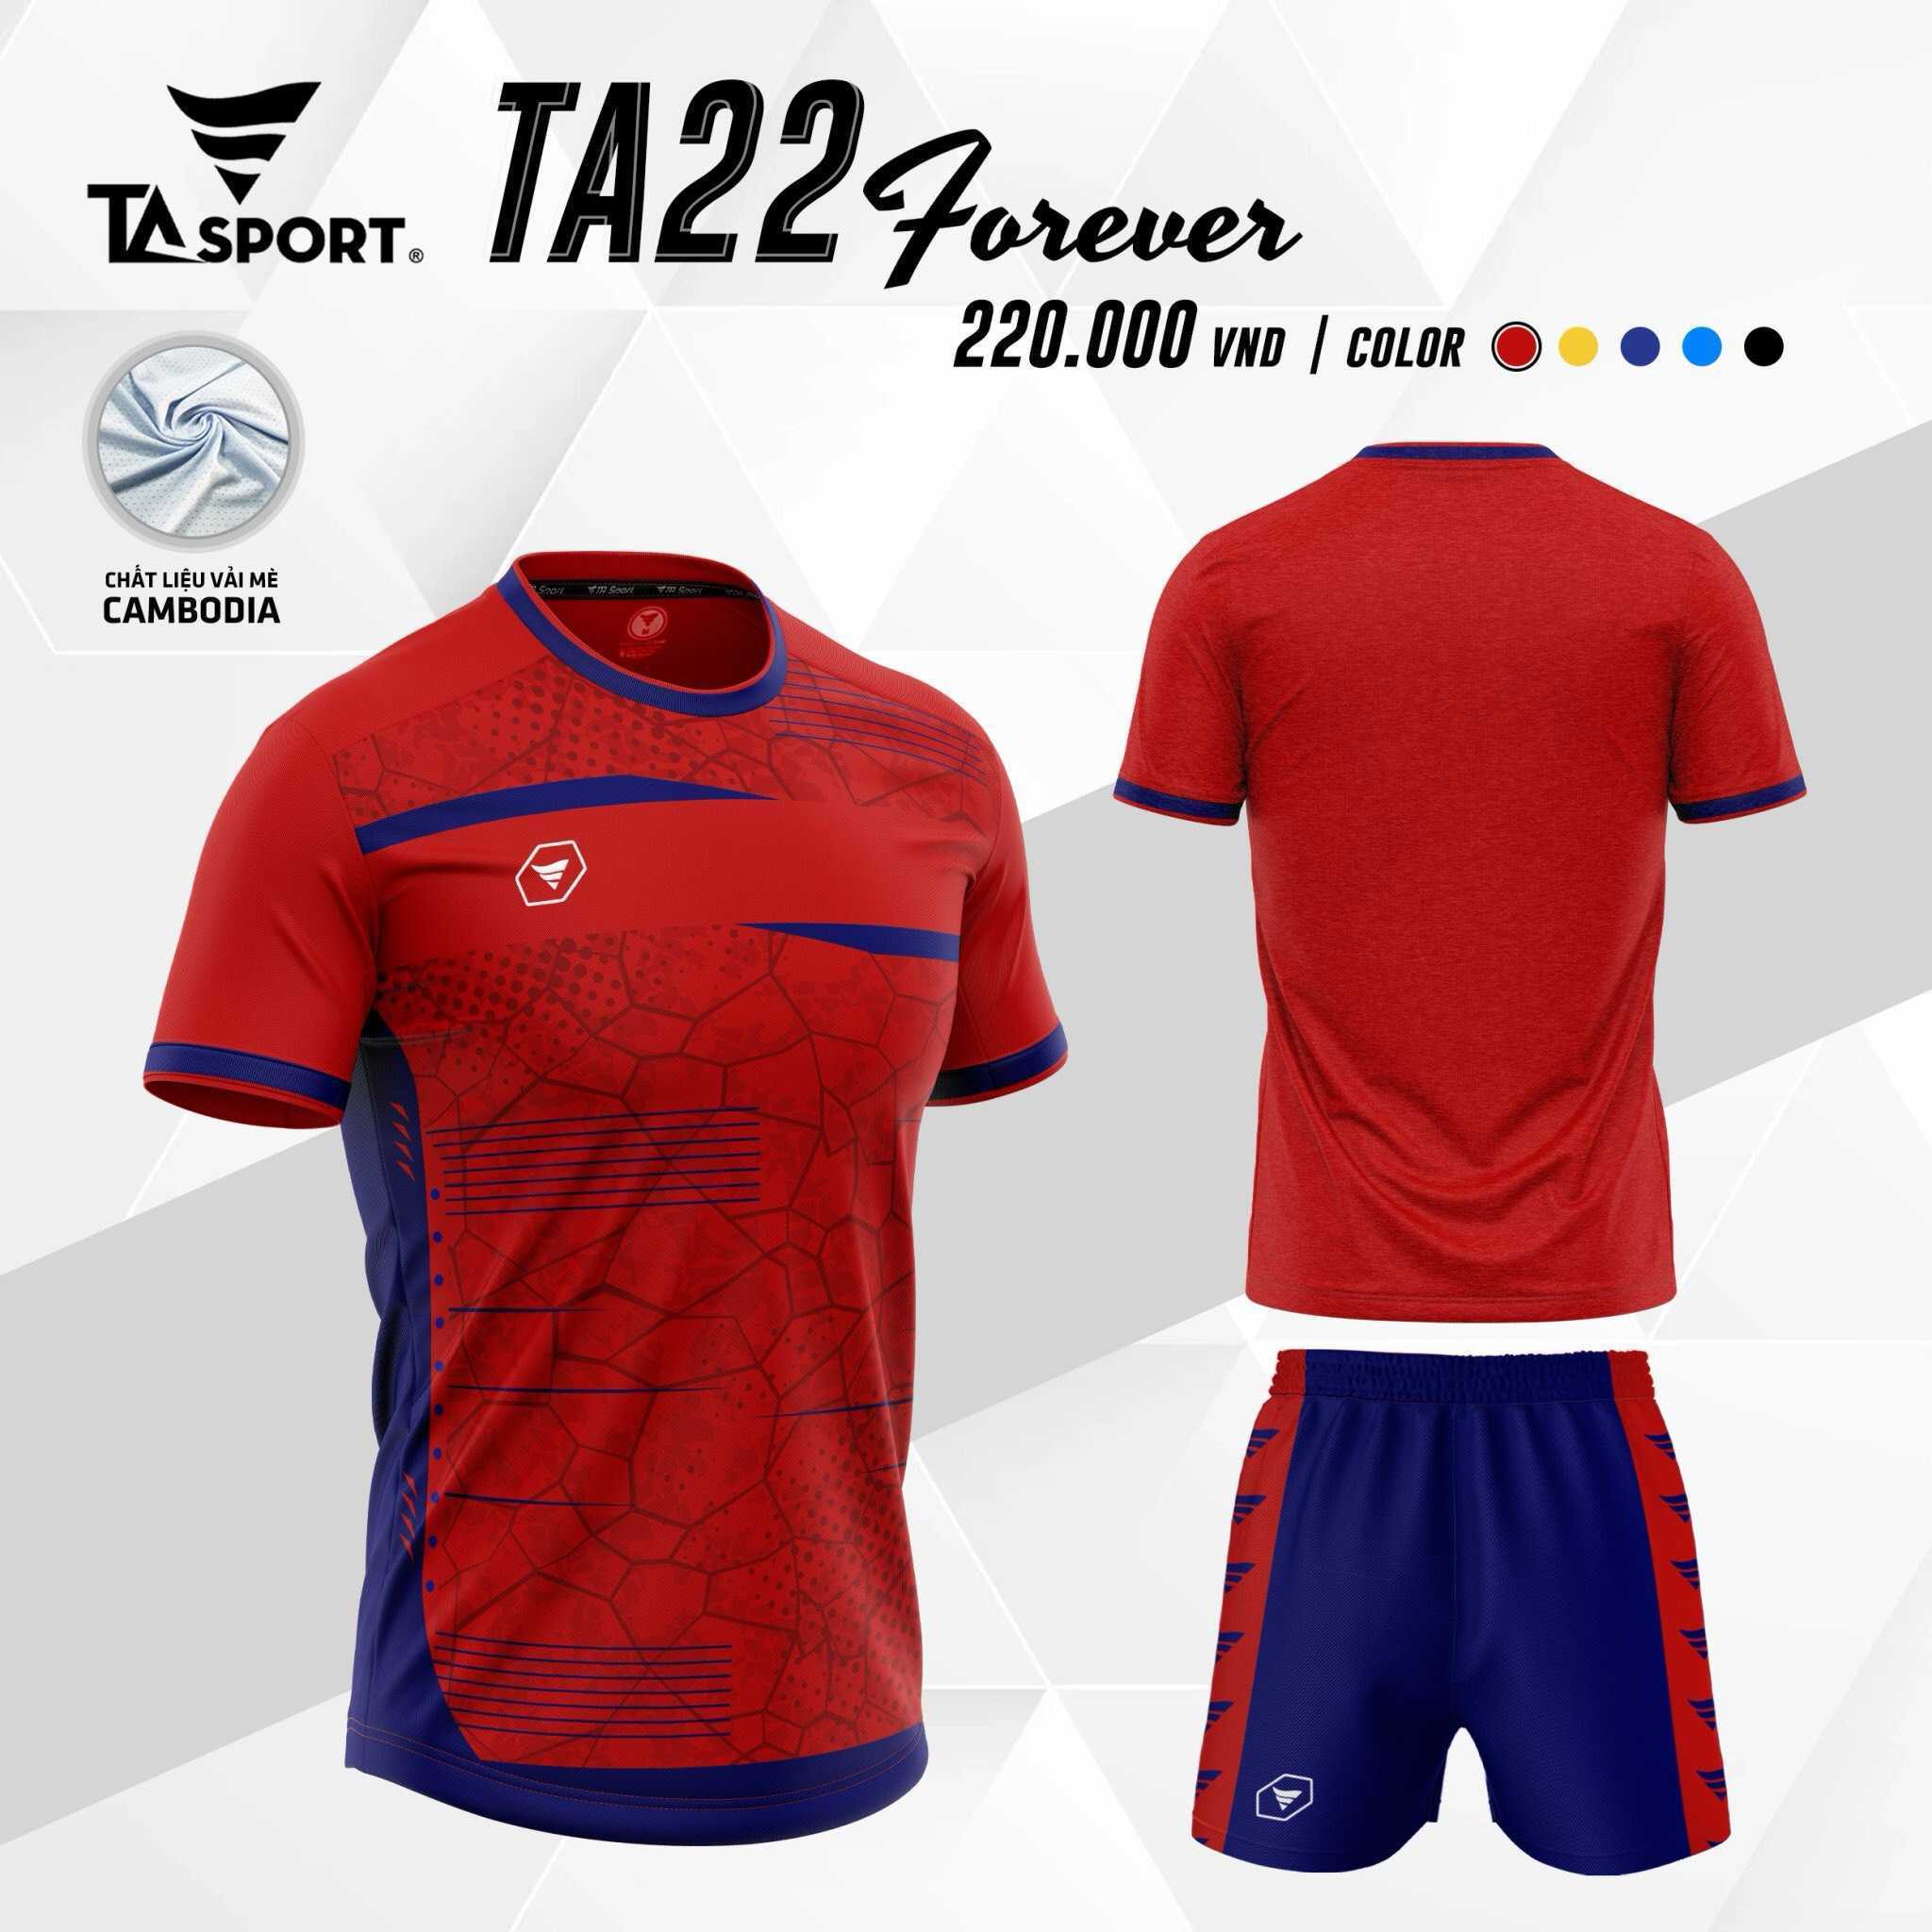 Bộ quần áo thể thao bóng đá chính hãng TA Sport TA22 Forever vải mè Cambodia nhiều màu trắng đen